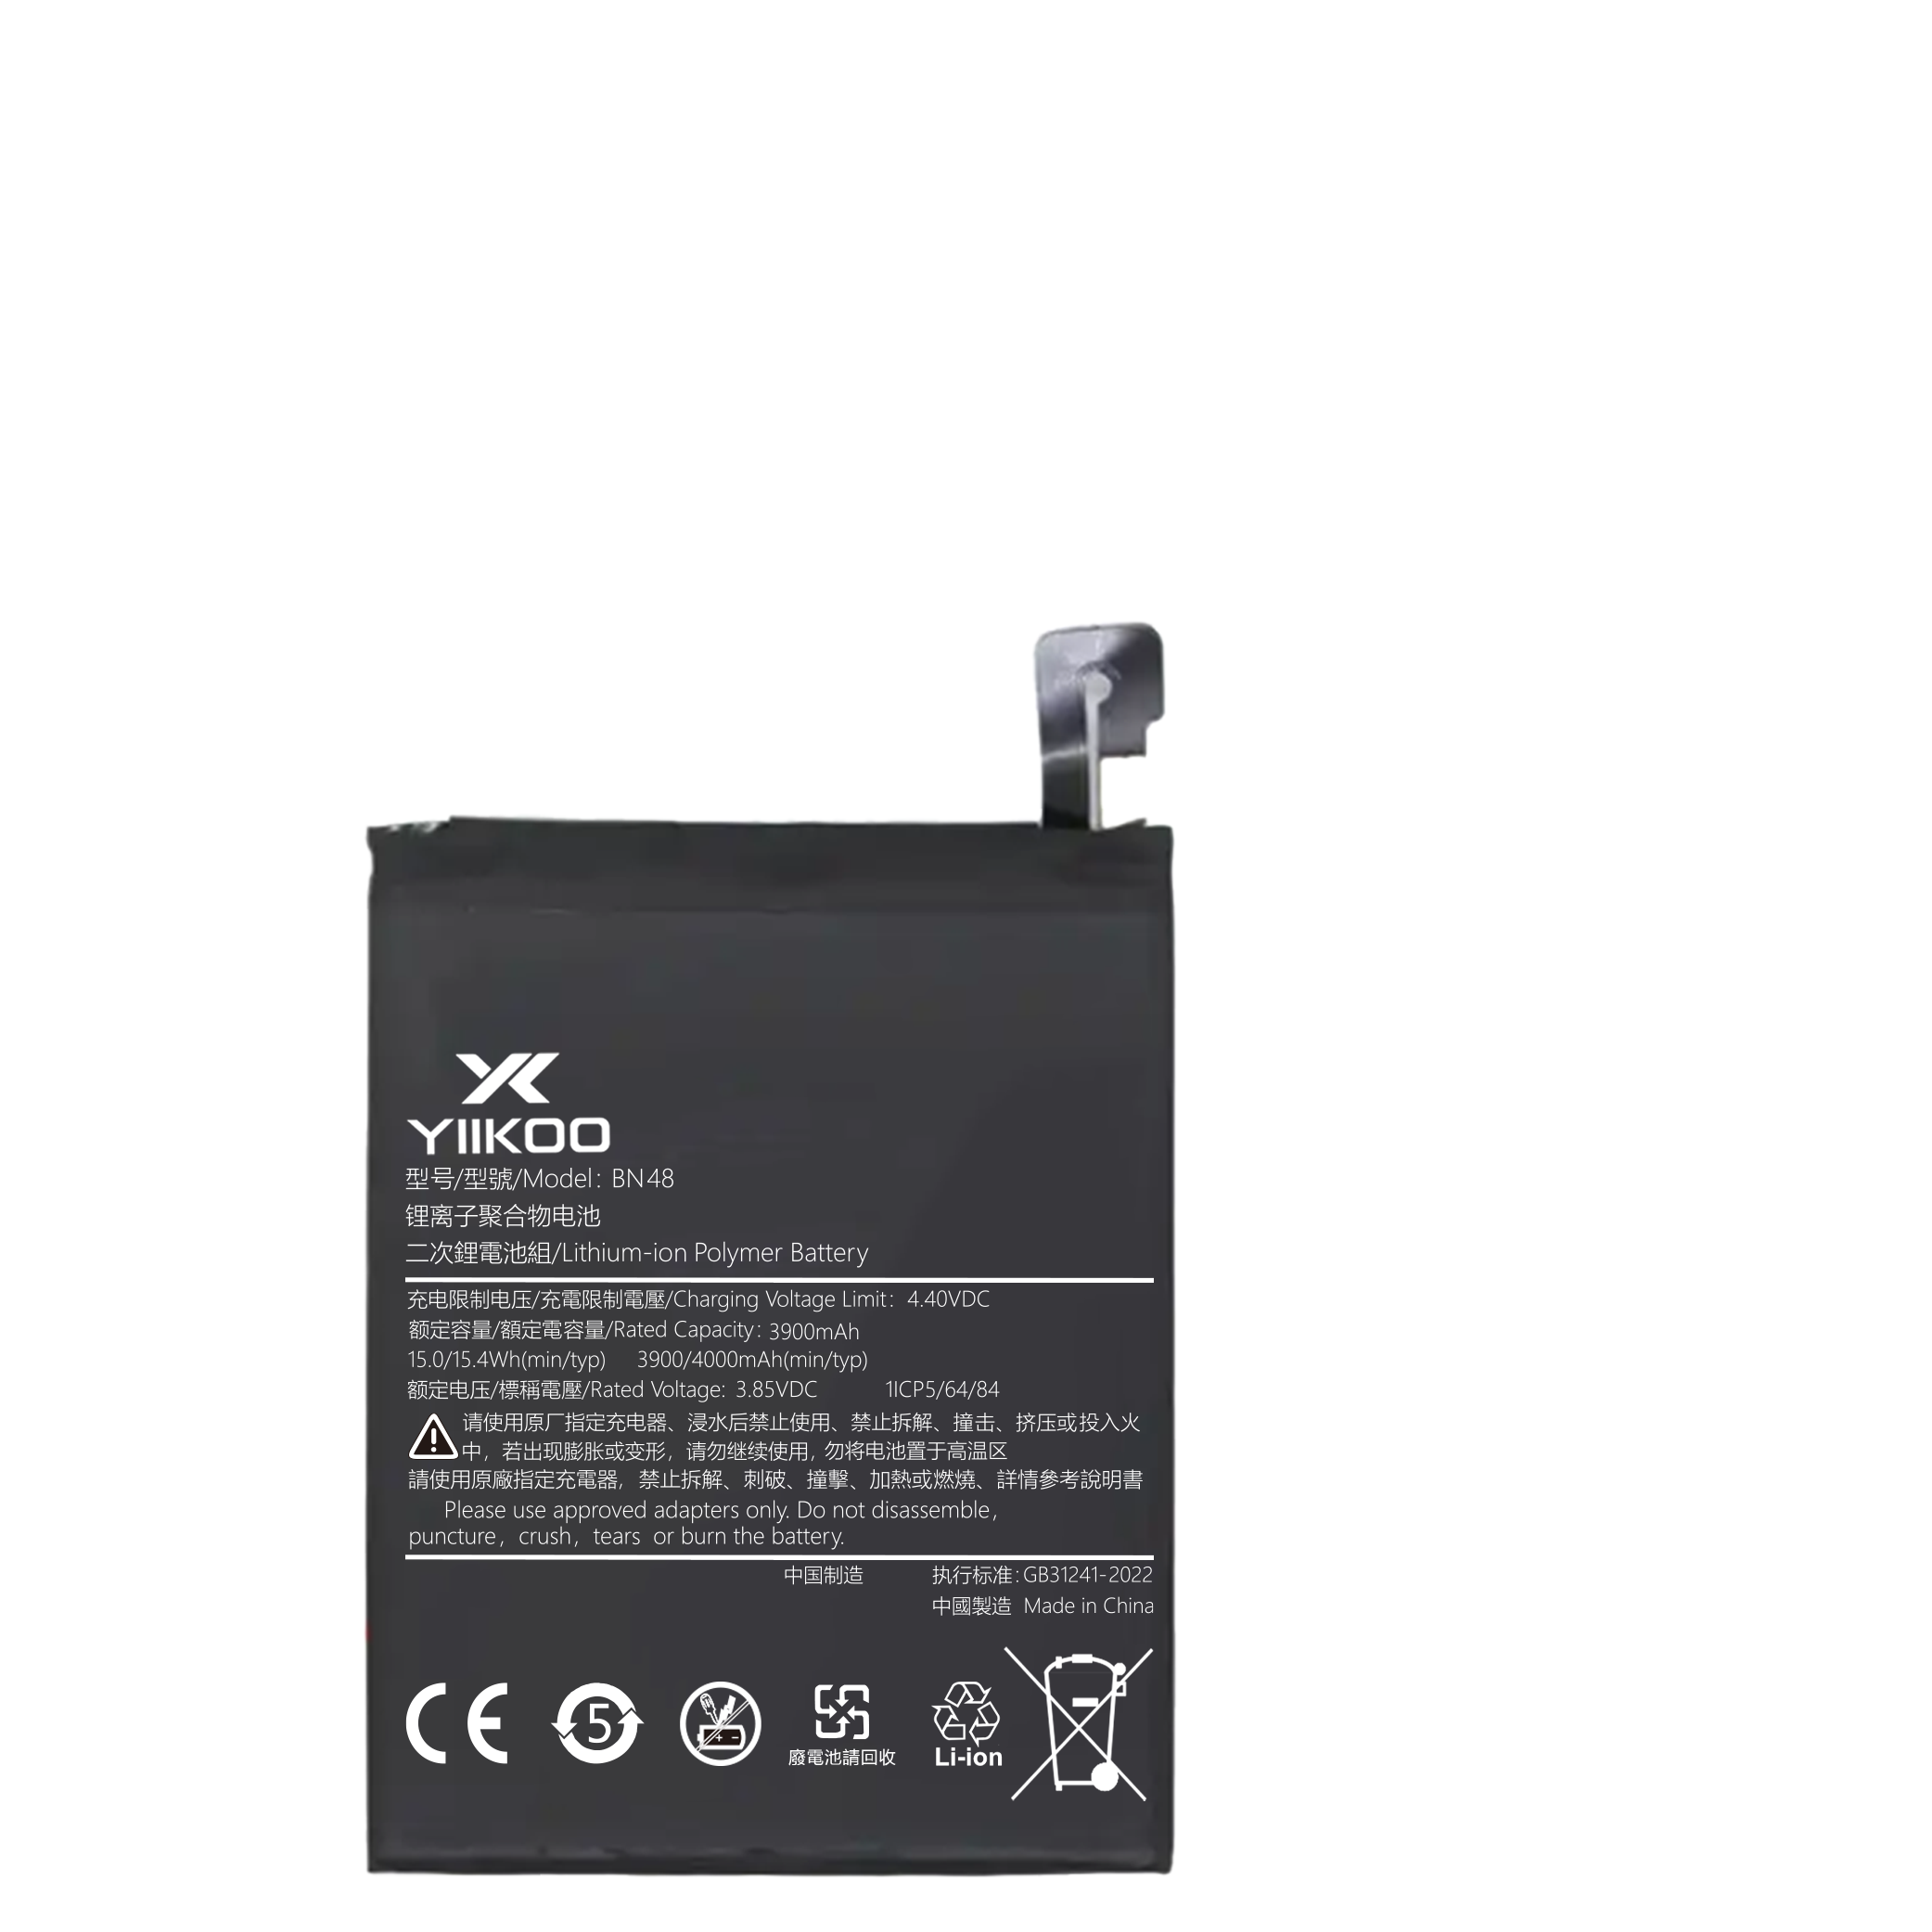 Hongmi note5 Battery (3900mAh) BN48